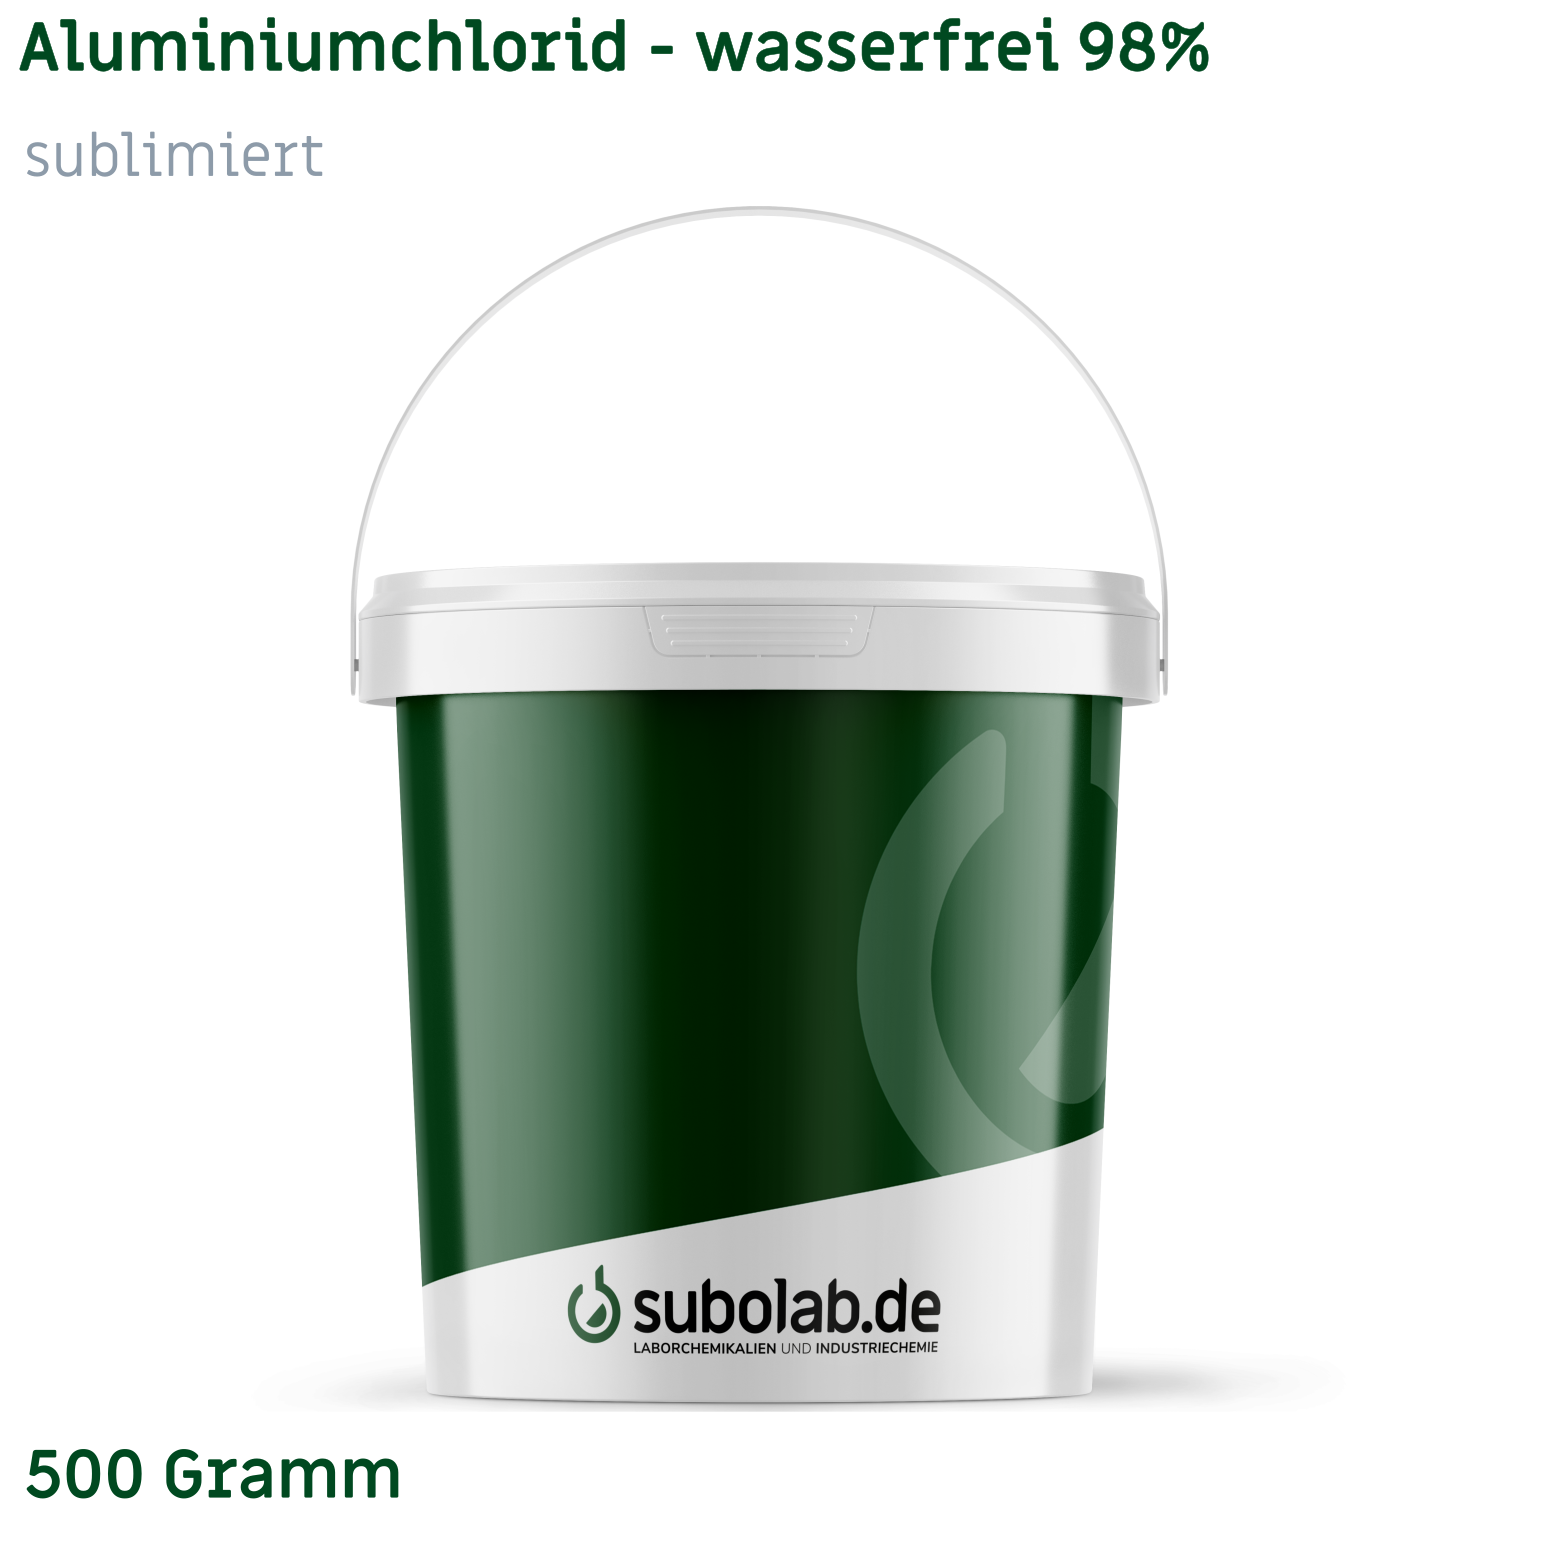 Bild von Aluminiumchlorid - wasserfrei 98%, sublimiert (500 Gramm)